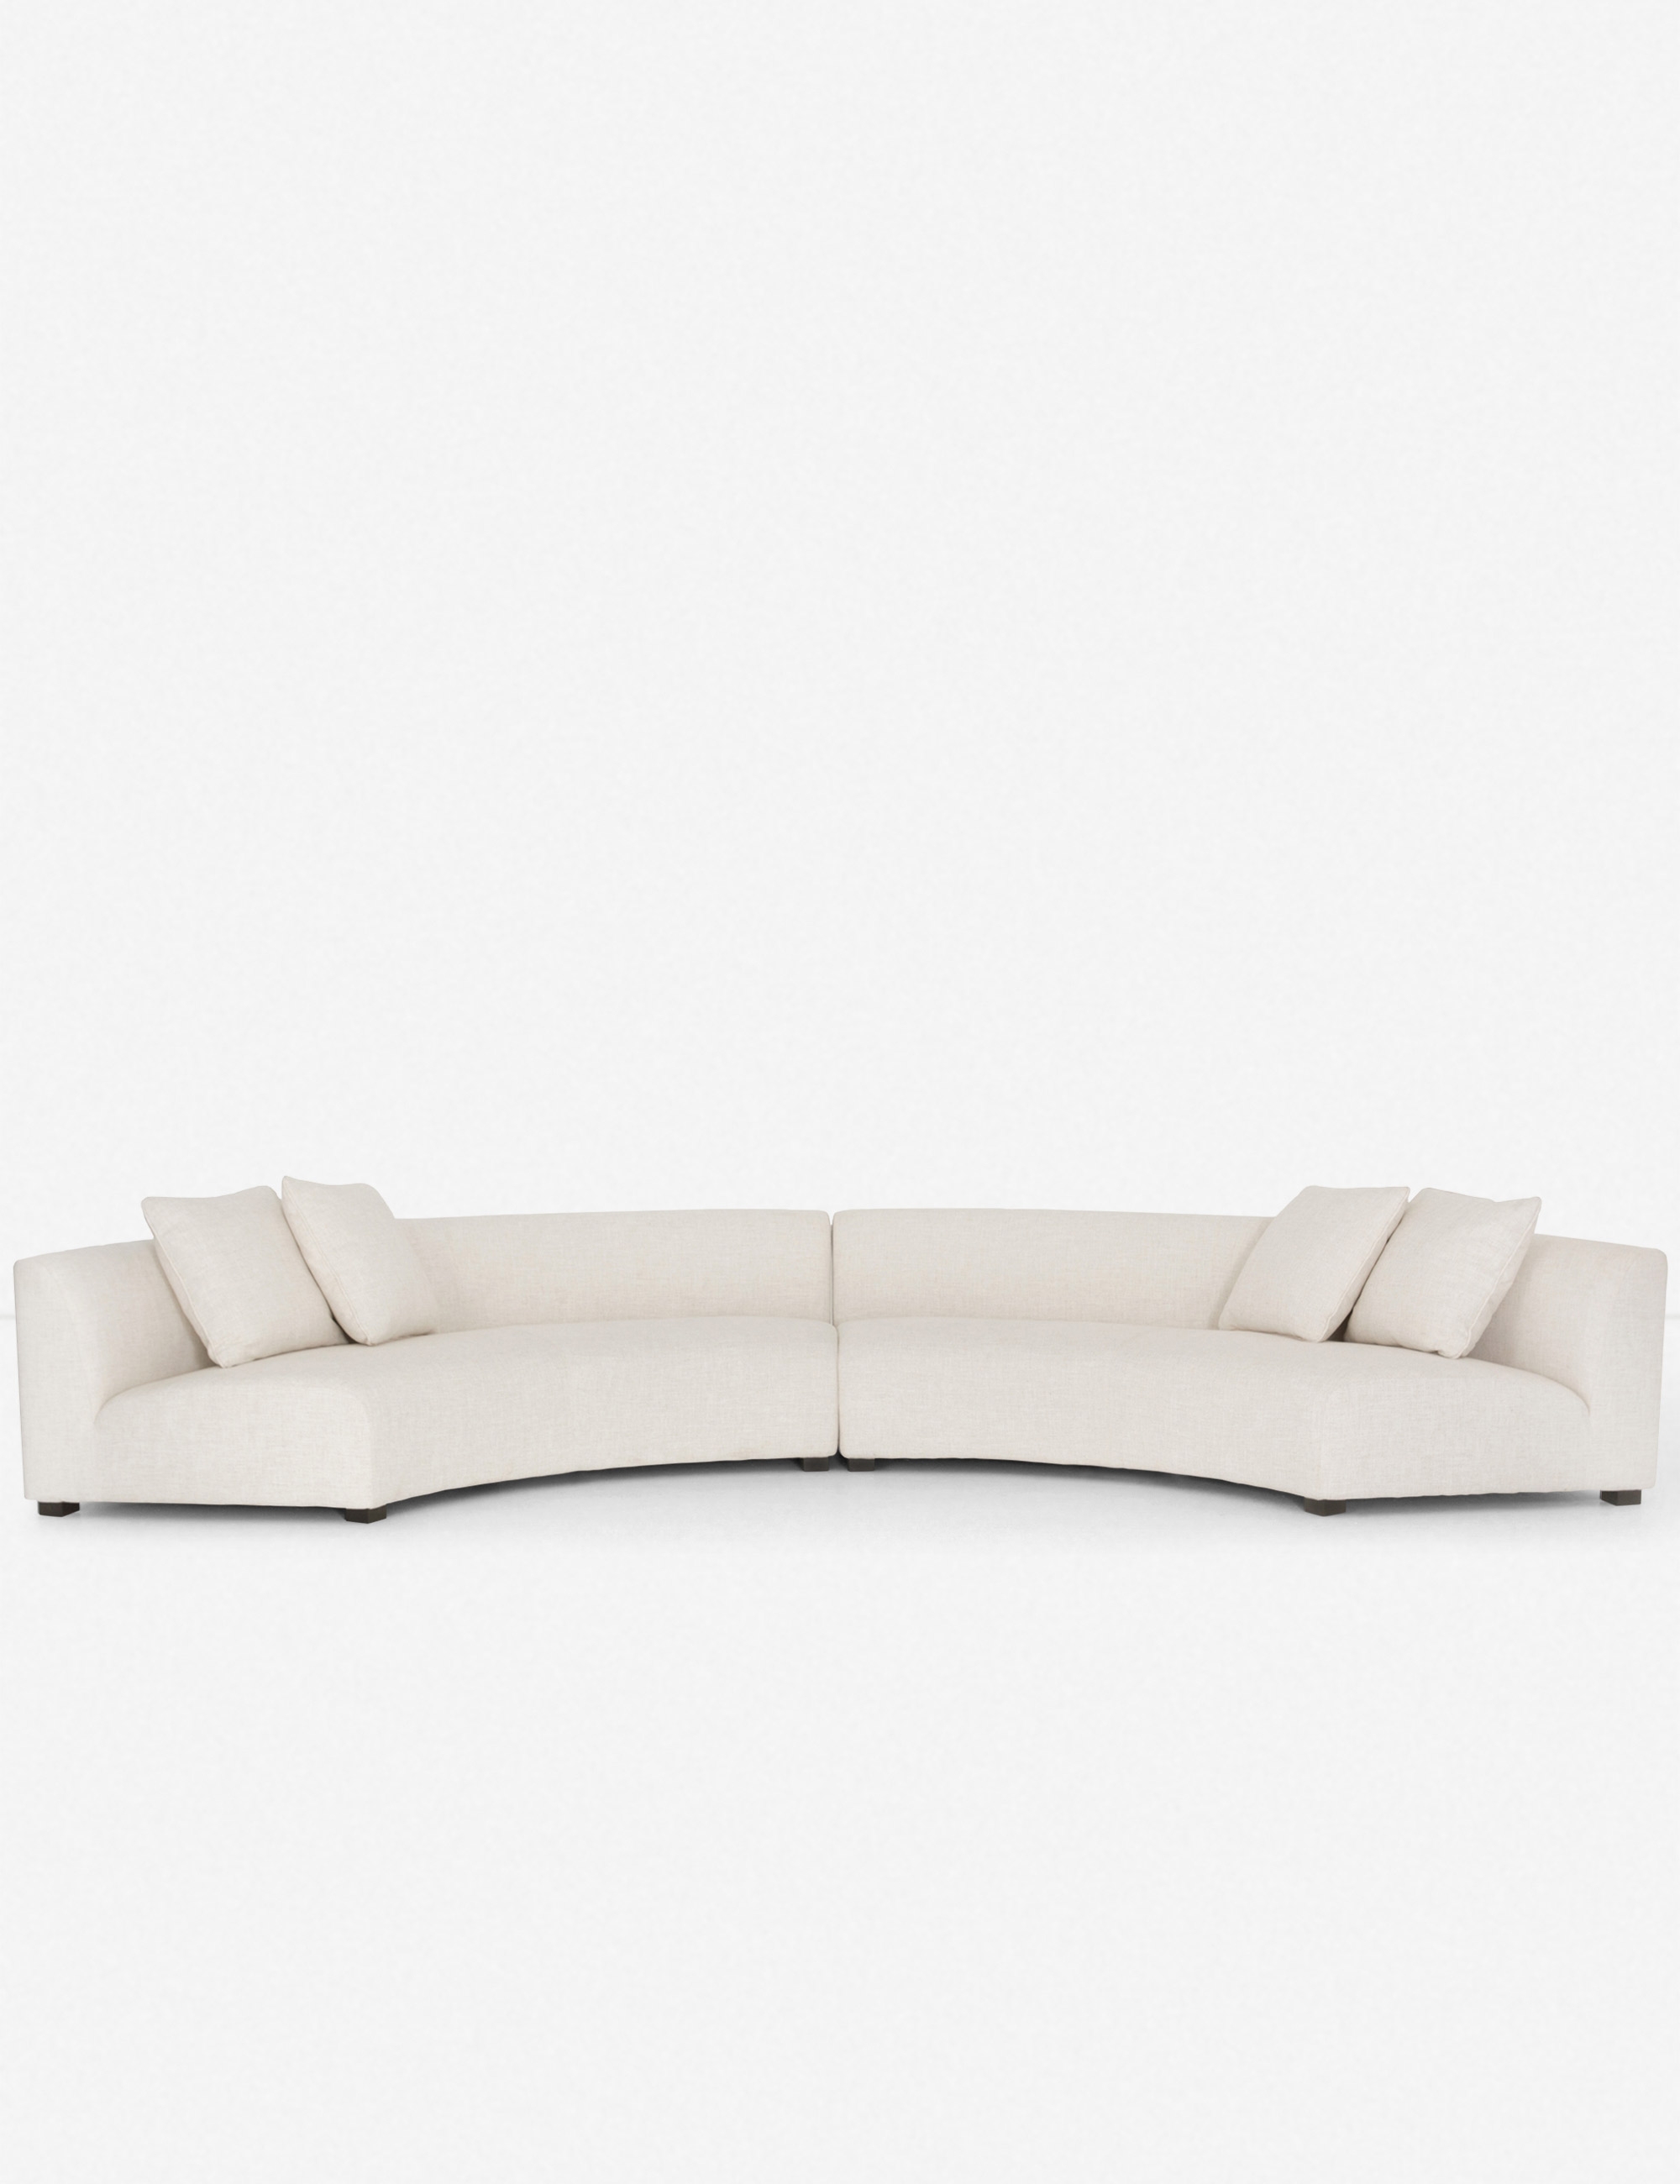 Saban 2-Piece Curved Sectional Sofa - Image 0